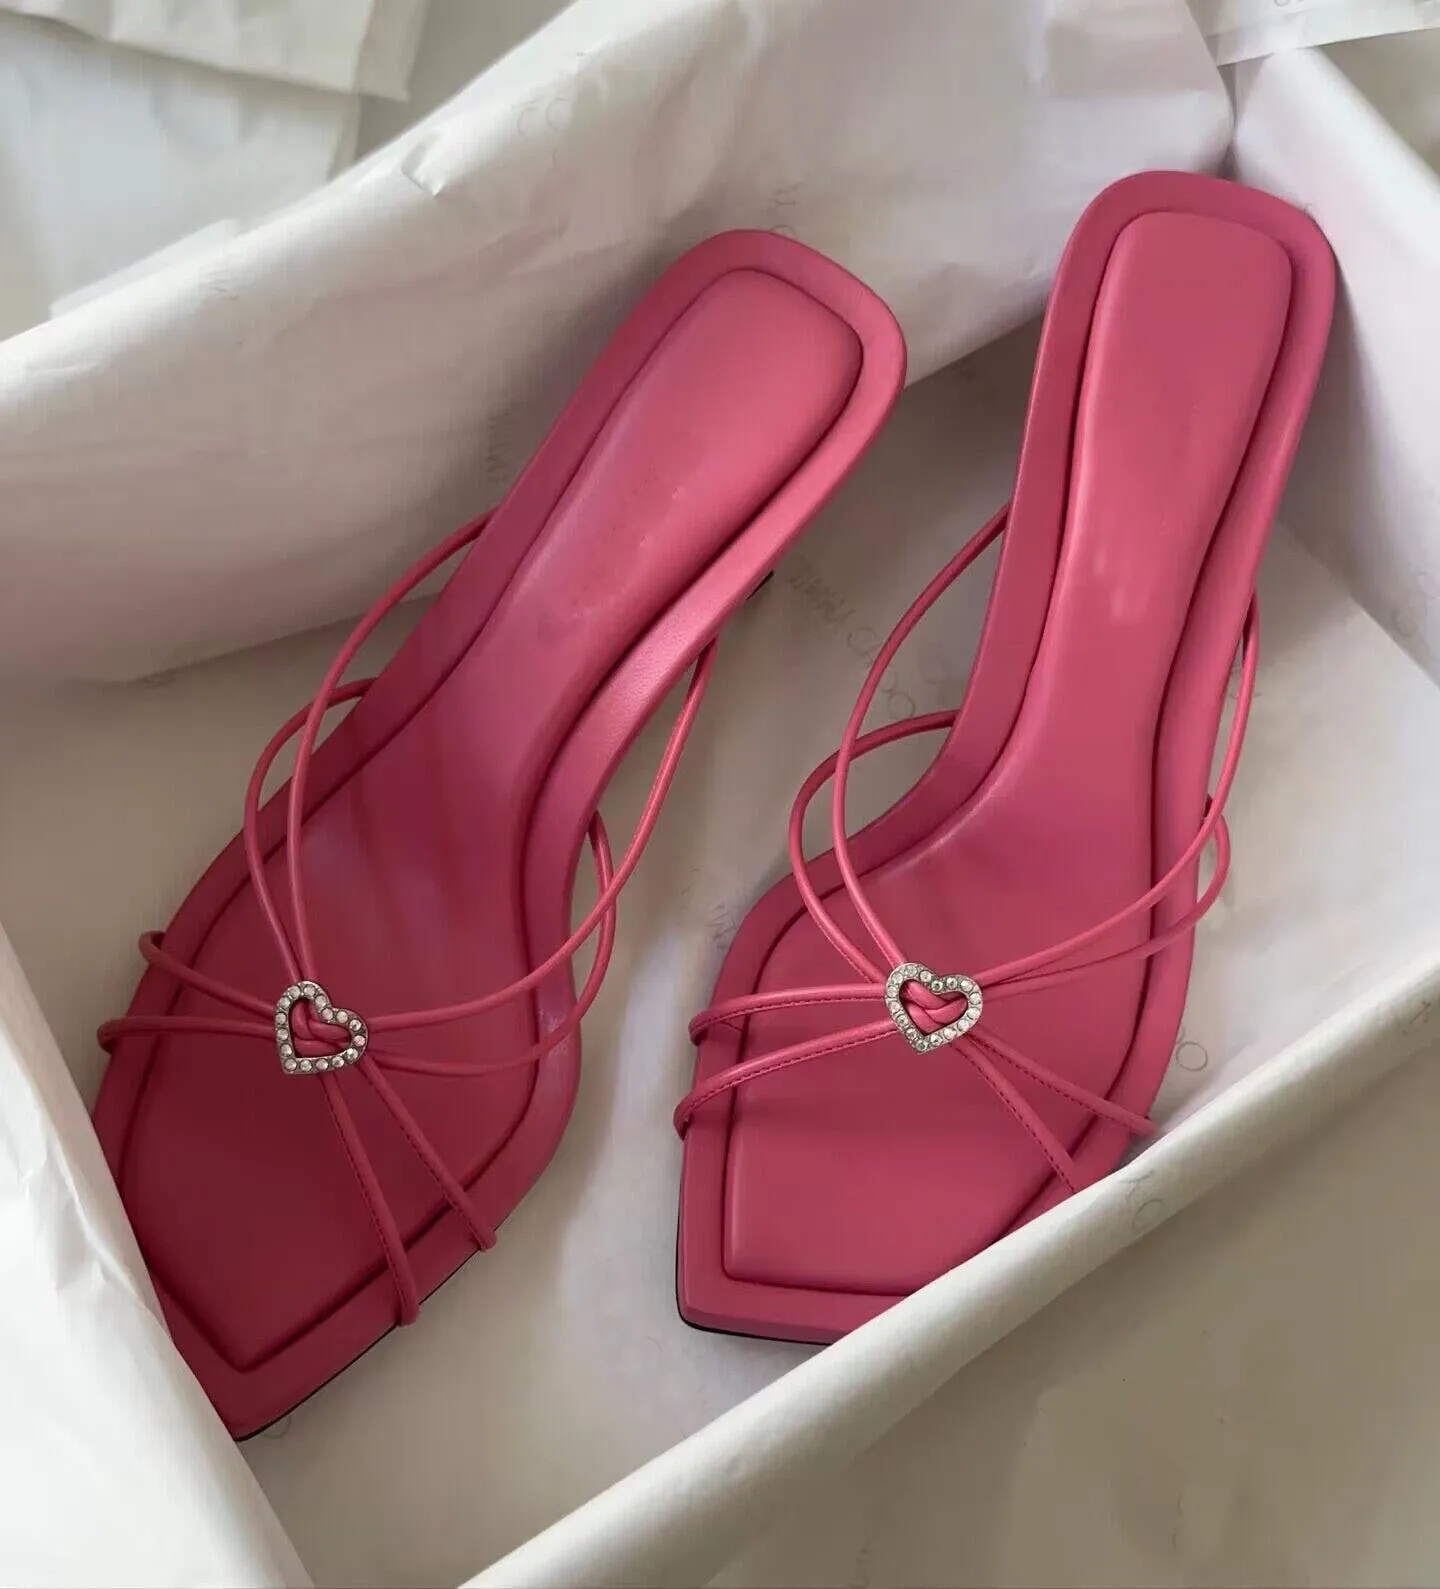 ELEAGNT merk dames indiya designer sandalen schoenen vierkant teen nappa lederen harten kristal muilezel slanke geknoopte riemen dames hoge hakken jurk schoen EU35-43 met doos